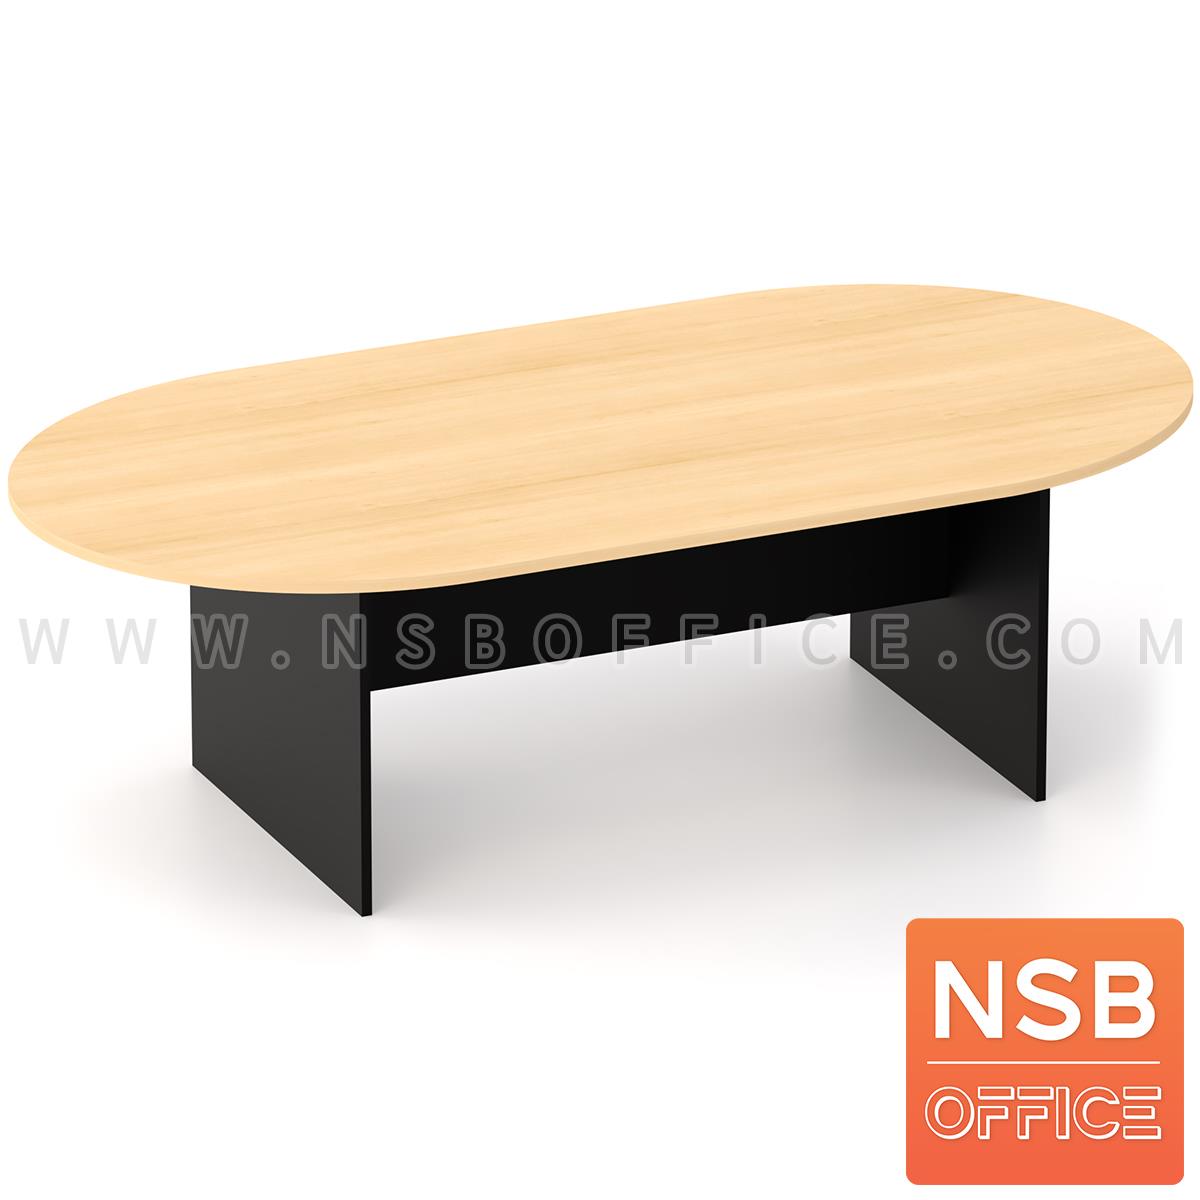 A05A032:โต๊ะประชุมหัวโค้ง  ขนาด 180W, 200W, 240W cm.  ขาไม้